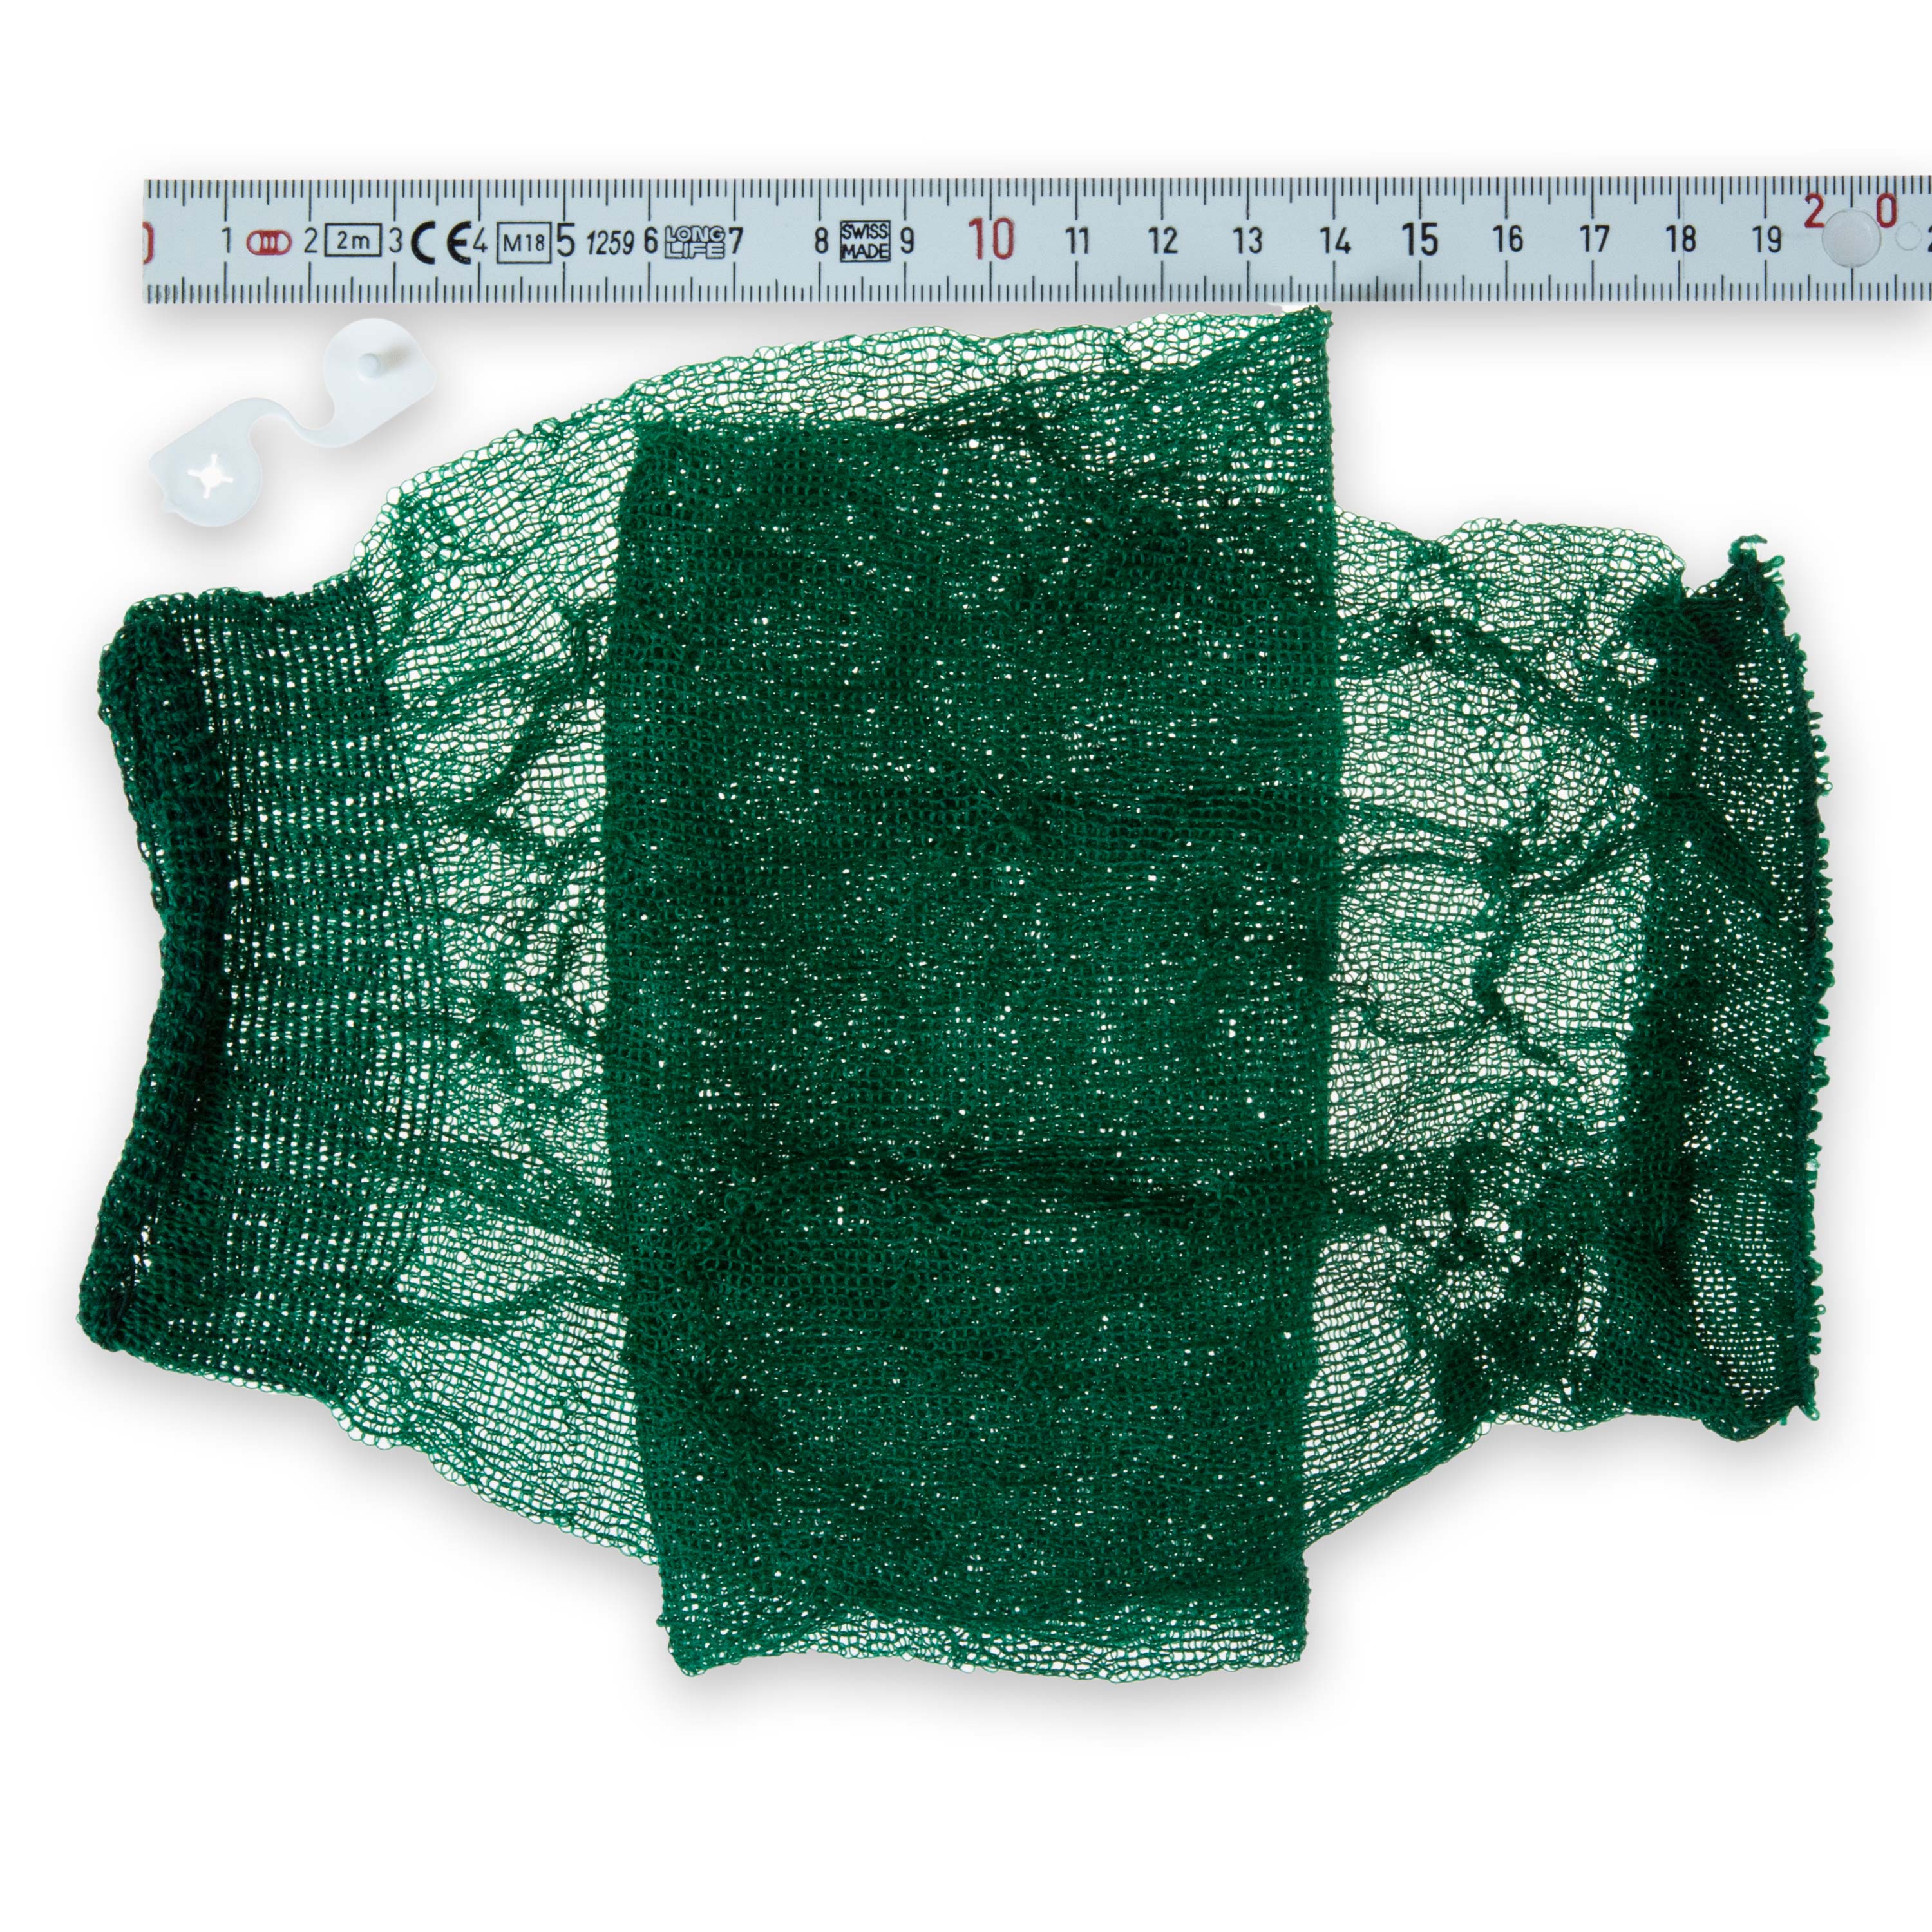 Filterstrumpf grün Größe bis 4,5 l